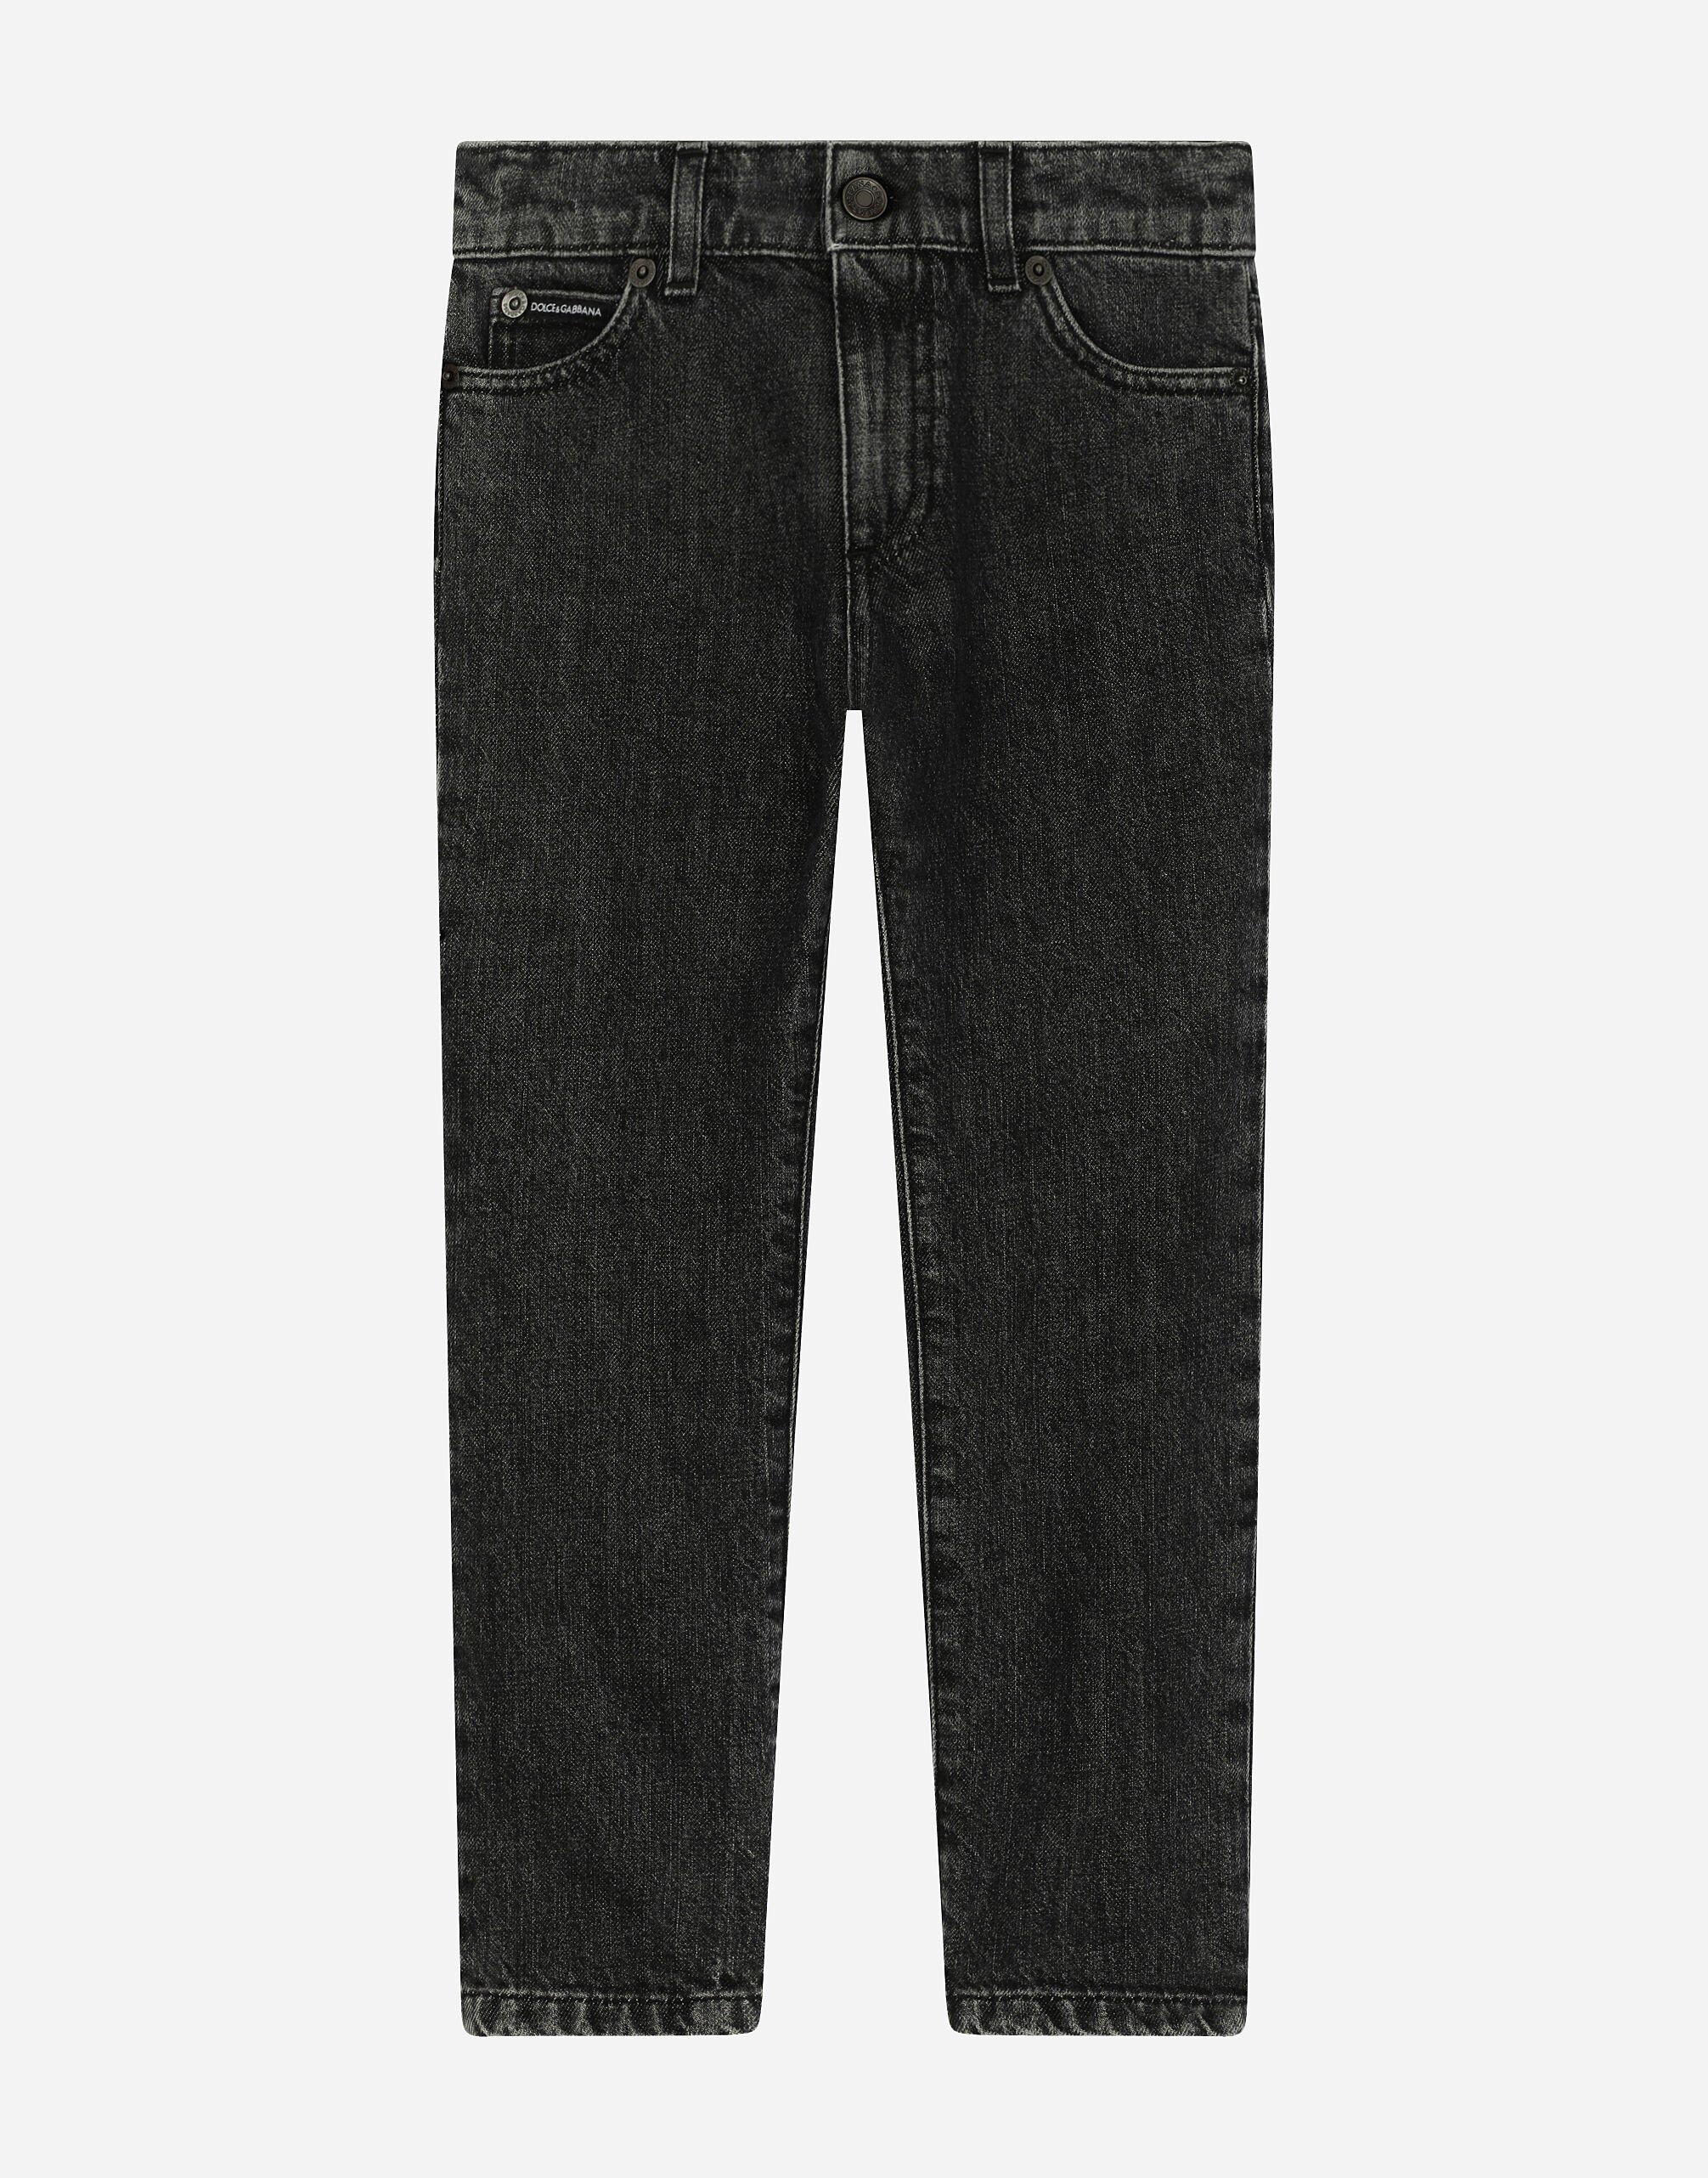 Dolce & Gabbana 5-pocket denim jeans Print L43Q25G7L7S